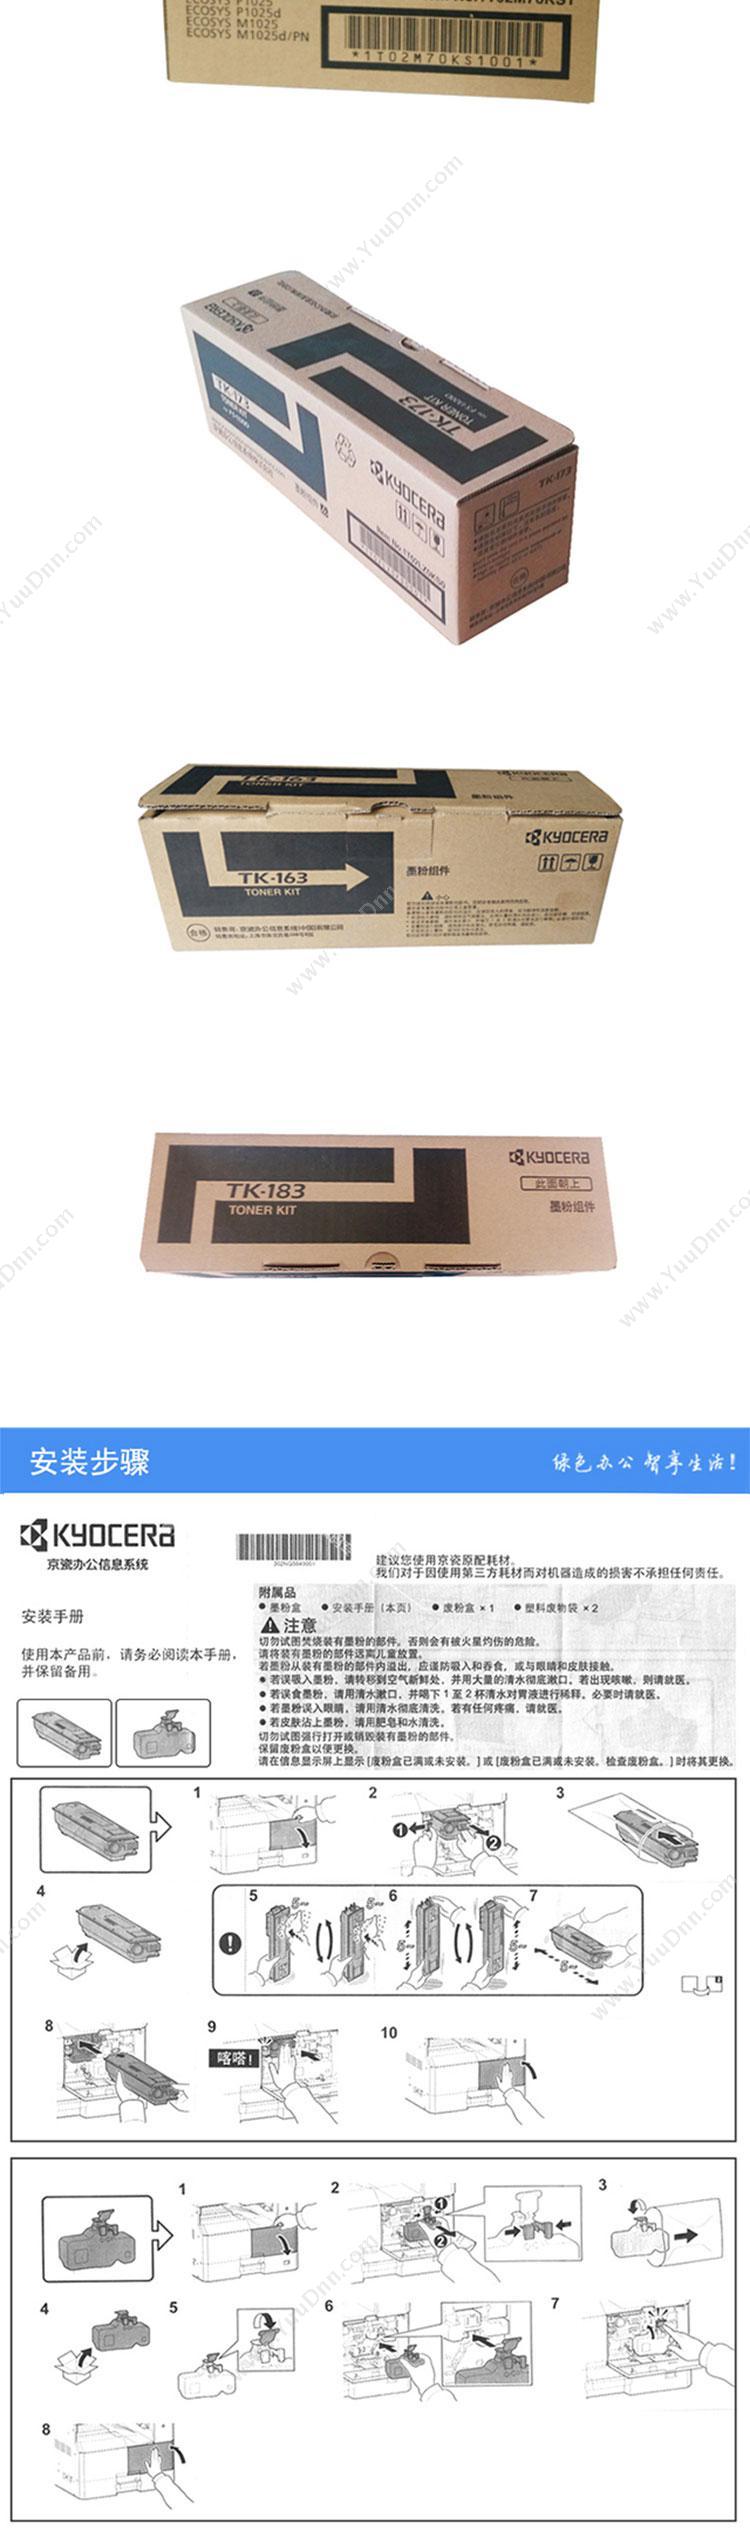 京瓷 Kyocera TK-1133（KYOCERA)TK-1133 墨粉（黑） 1支（适用FS-1130mFP、3000页） 墨粉/墨粉盒